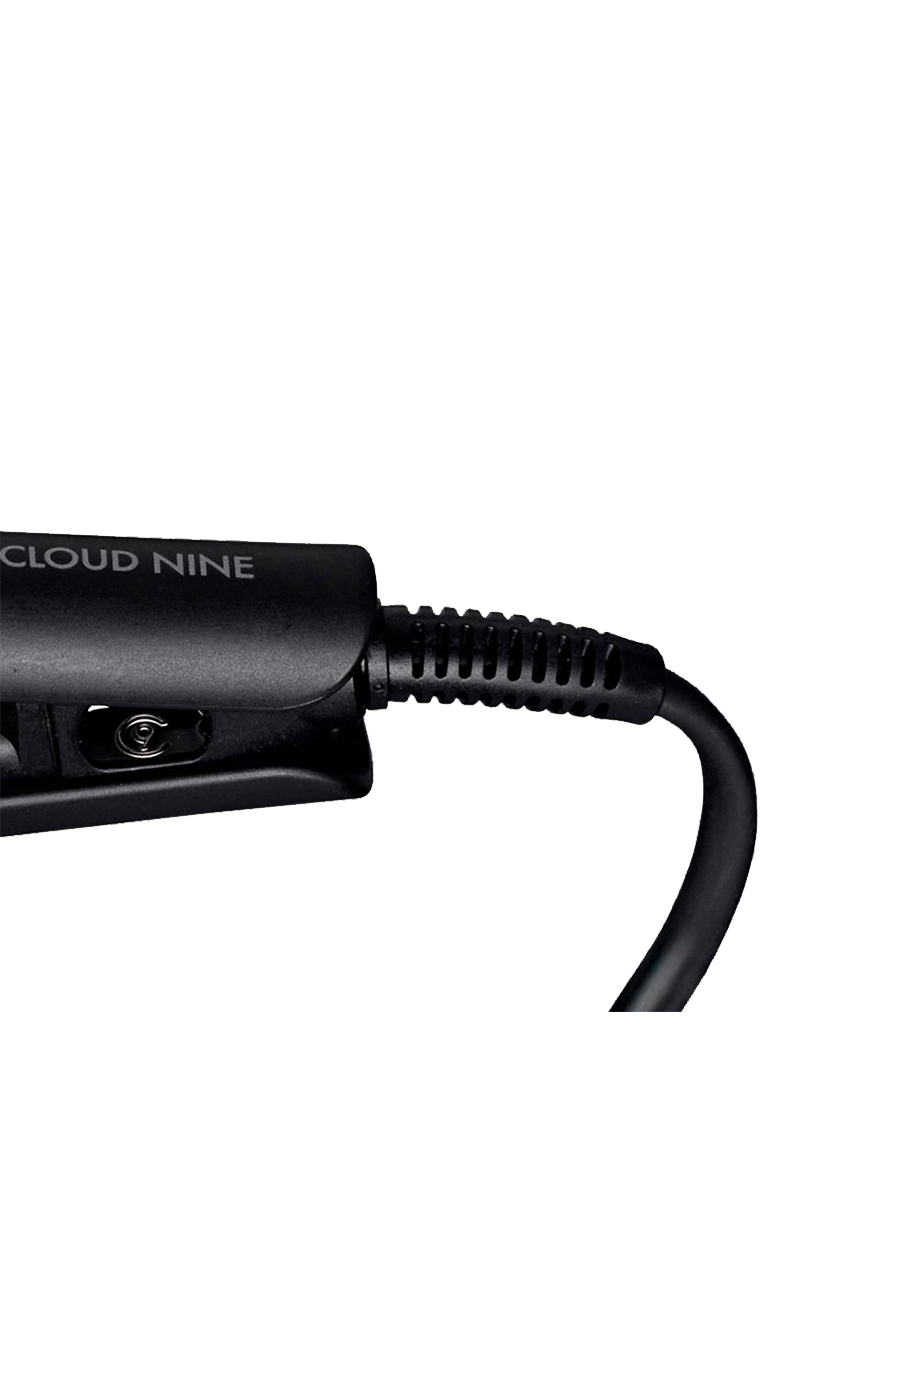 Стайлер «Мини» Cloud Nine Micro Iron изобр. 5